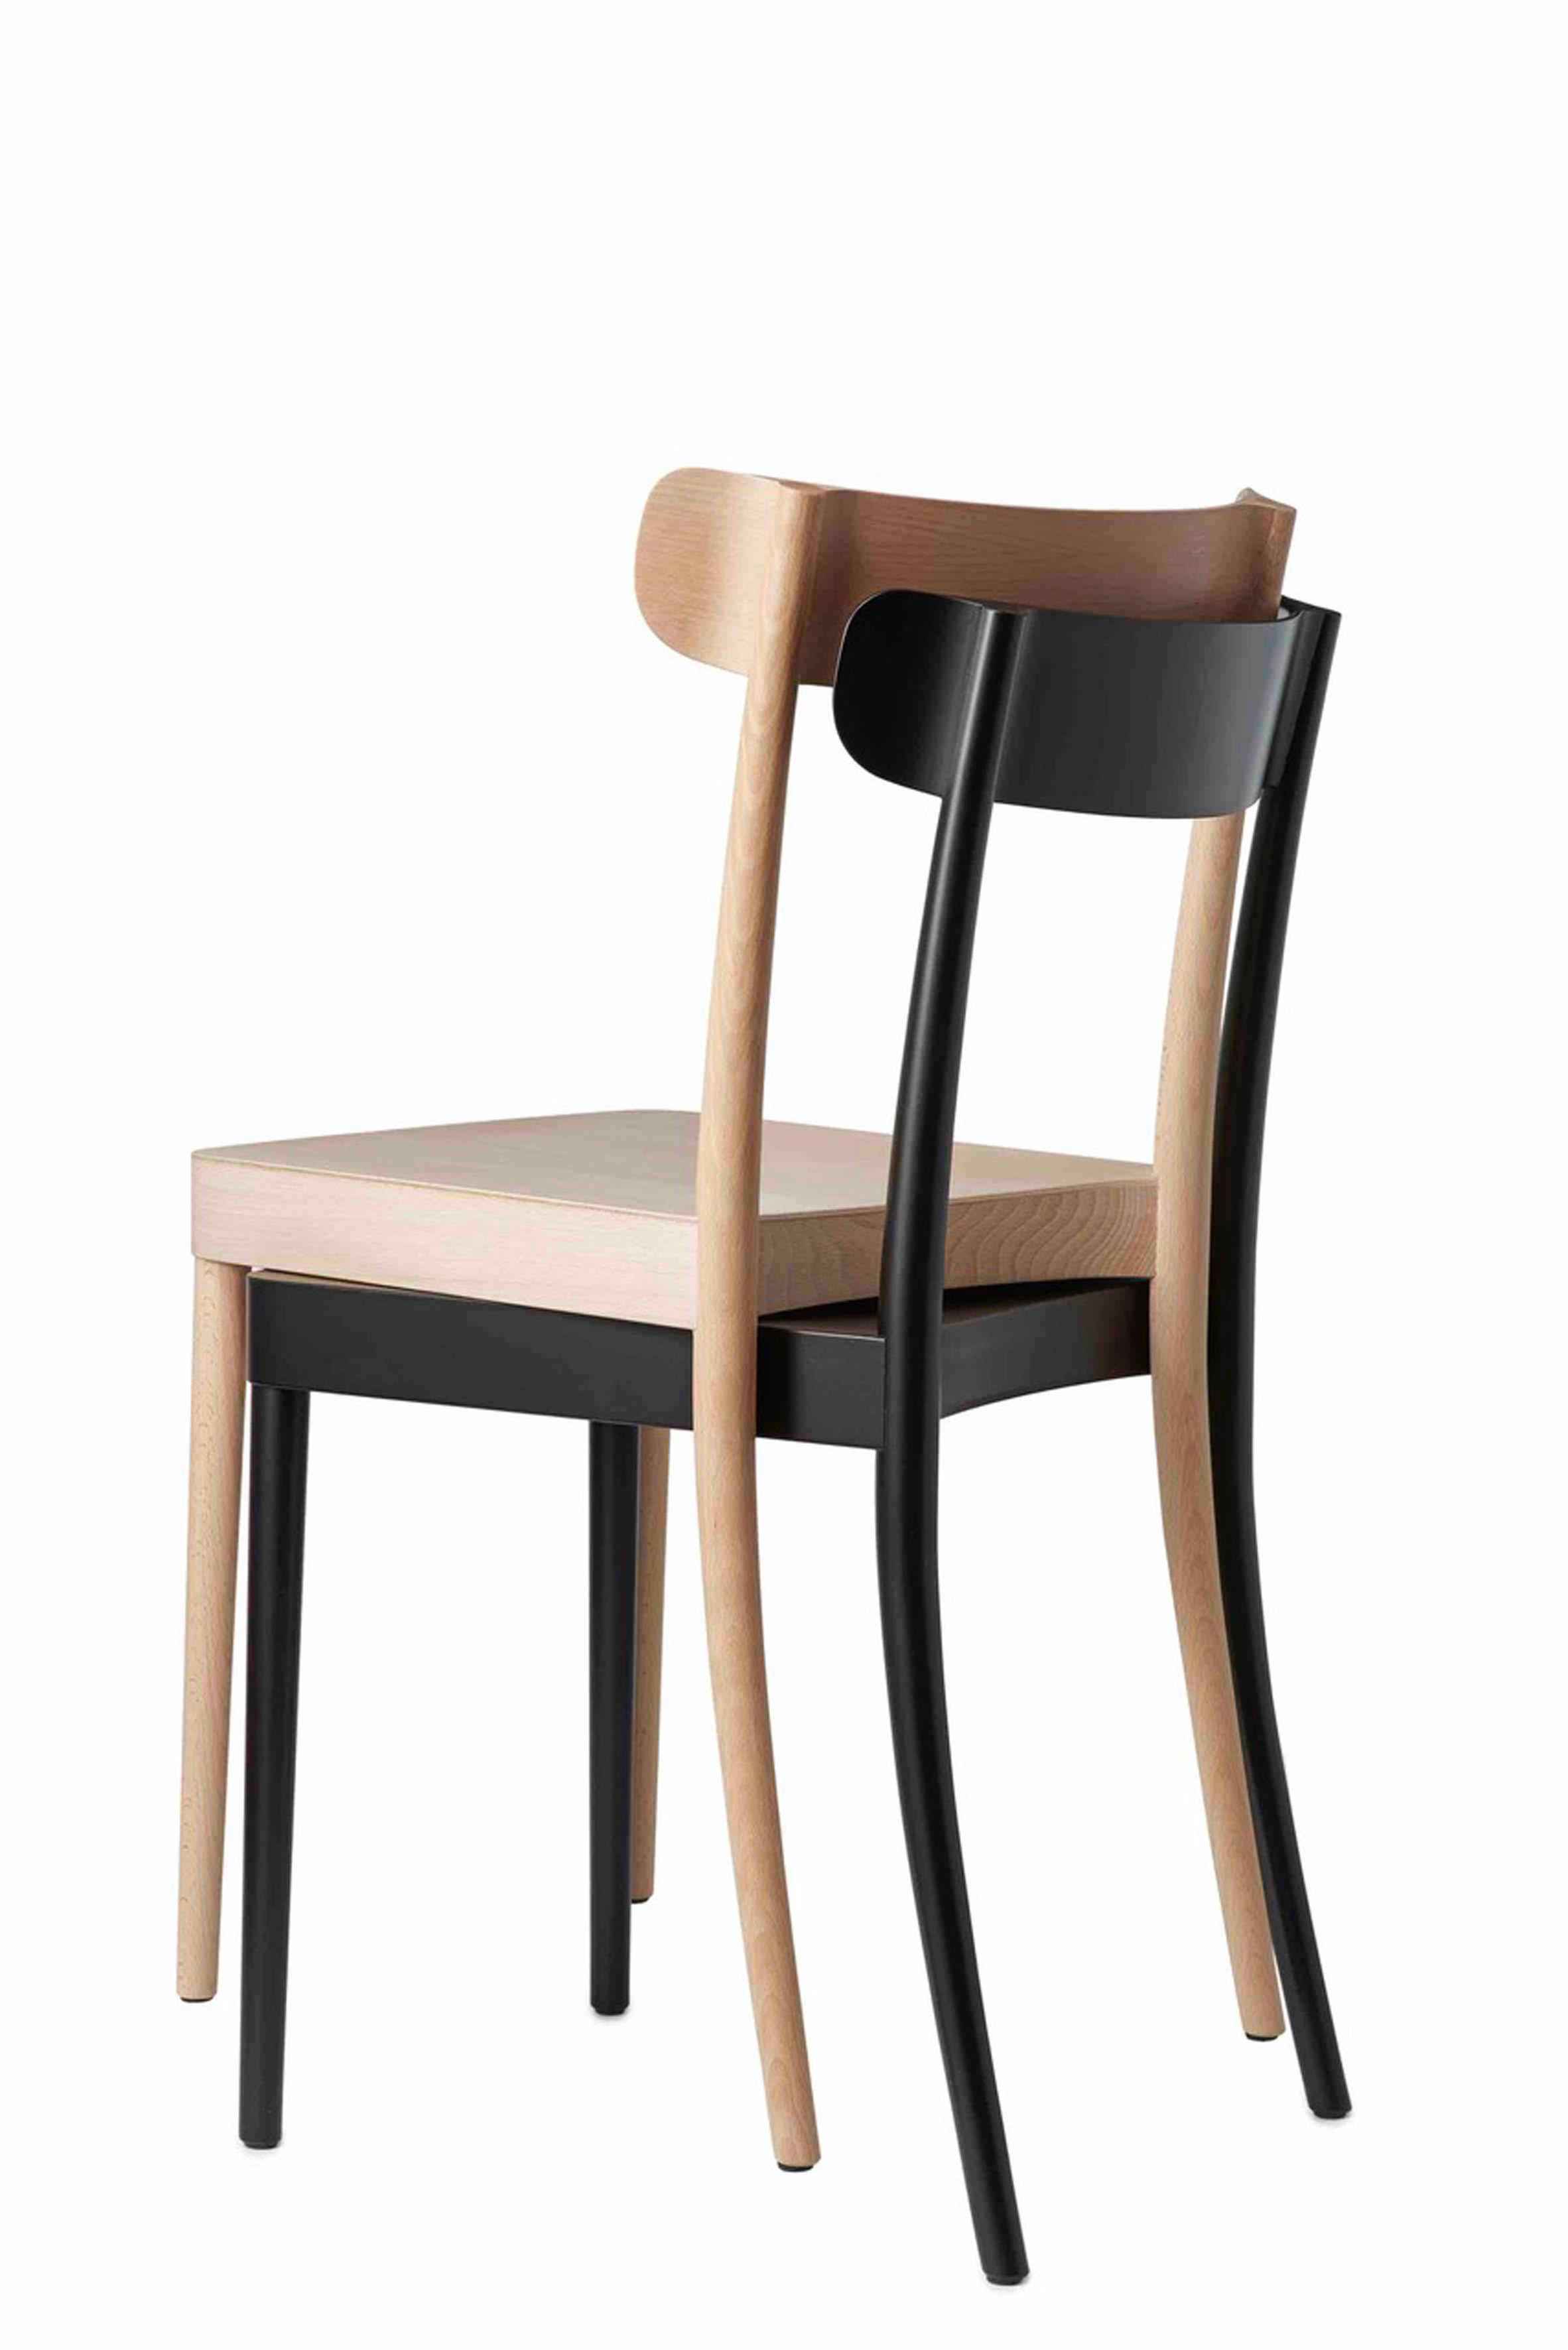 北欧五种最可持续的椅子设计分别来由世界上五个优秀的设计师设计